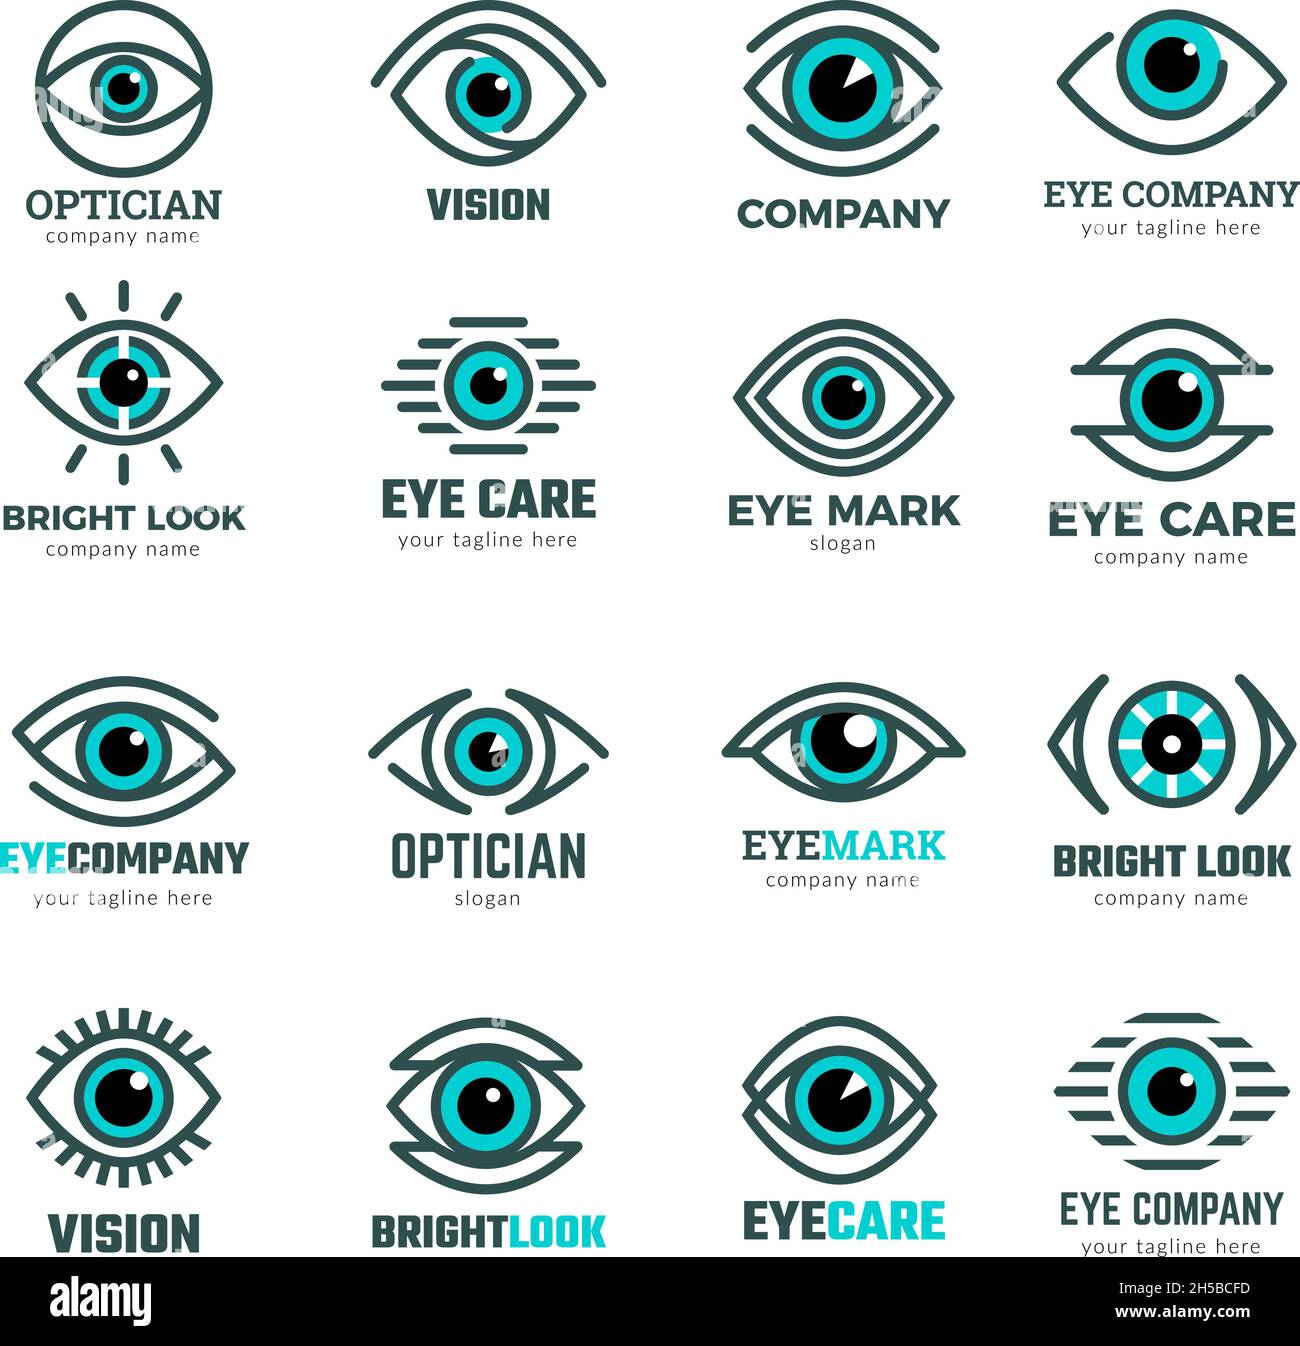 Symboles des yeux.Collection de logotypes médicaux pour clinique ophtalmologique Focus vision de l'œil humain Images vectorielles récentes Illustration de Vecteur